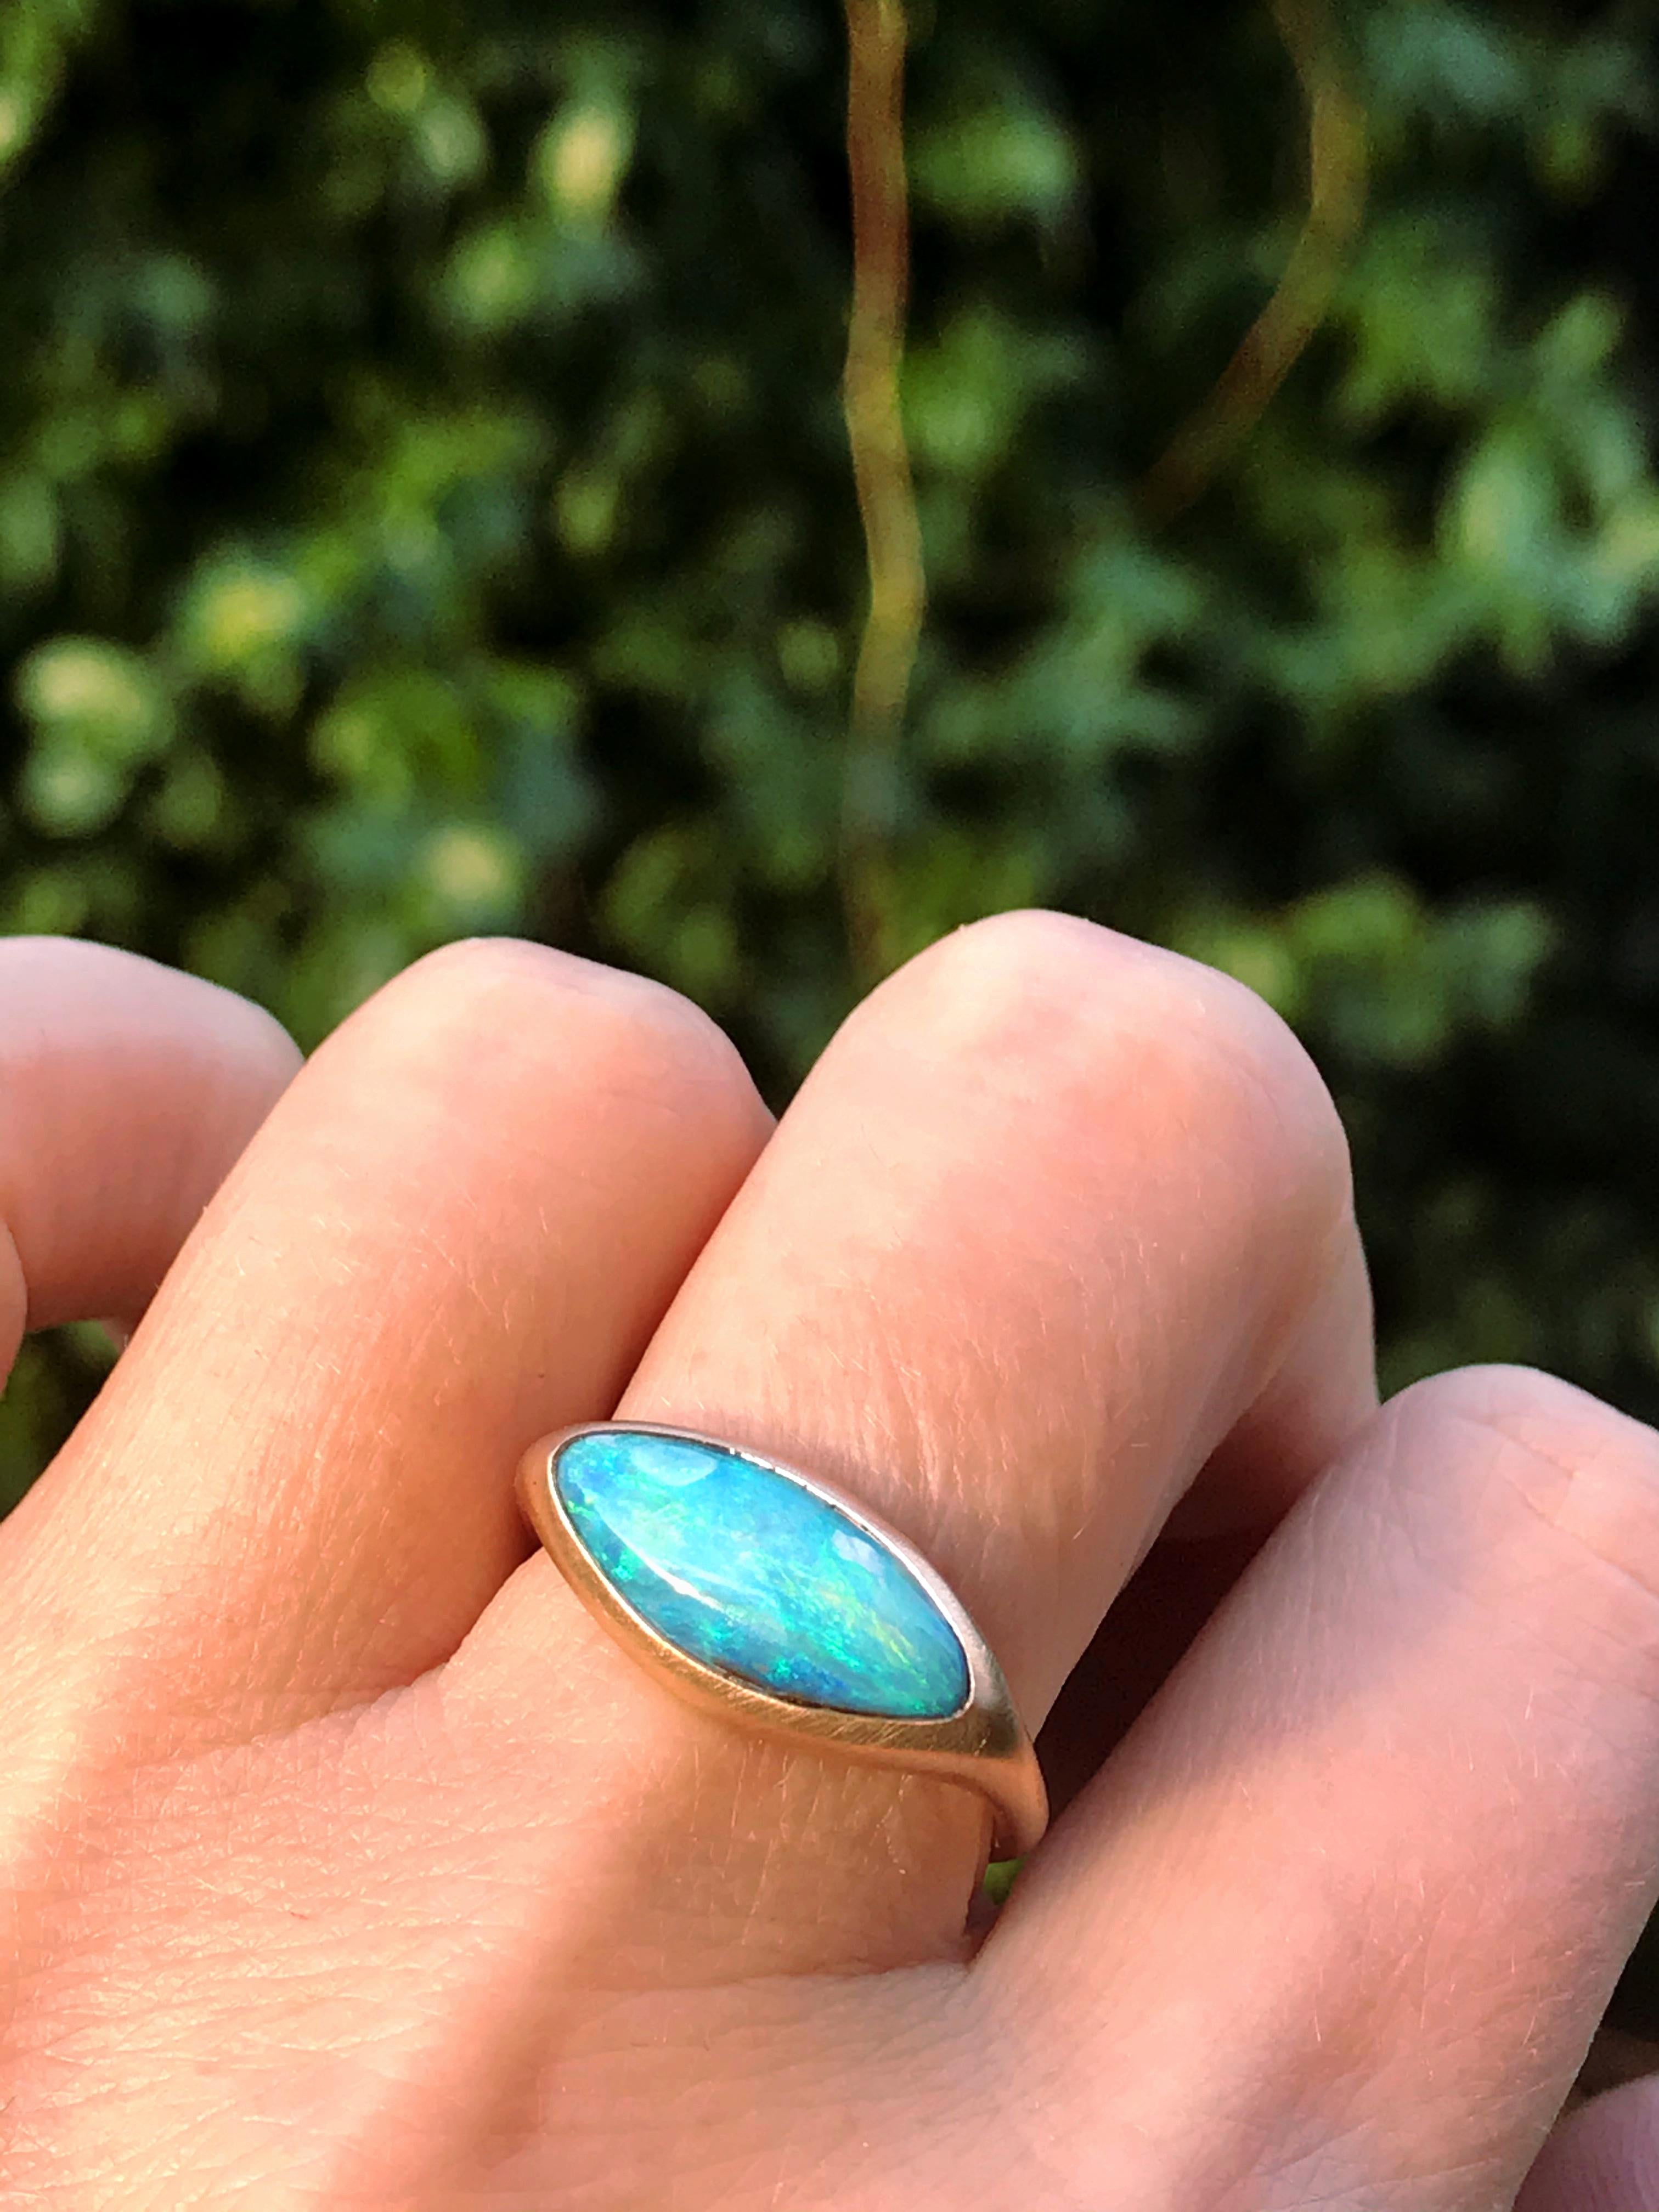 Dalben design Einzigartiger Ring aus 18 kt Roségold mit einem 3,02 Karat tief hellblauen australischen Boulder Opal in Lünettenform  .  
Ringgröße 7 1/4 - EU 55 größenverstellbar.  
Lünette Einstellung Dimension:  
maximale Breite 18,7 mm, 